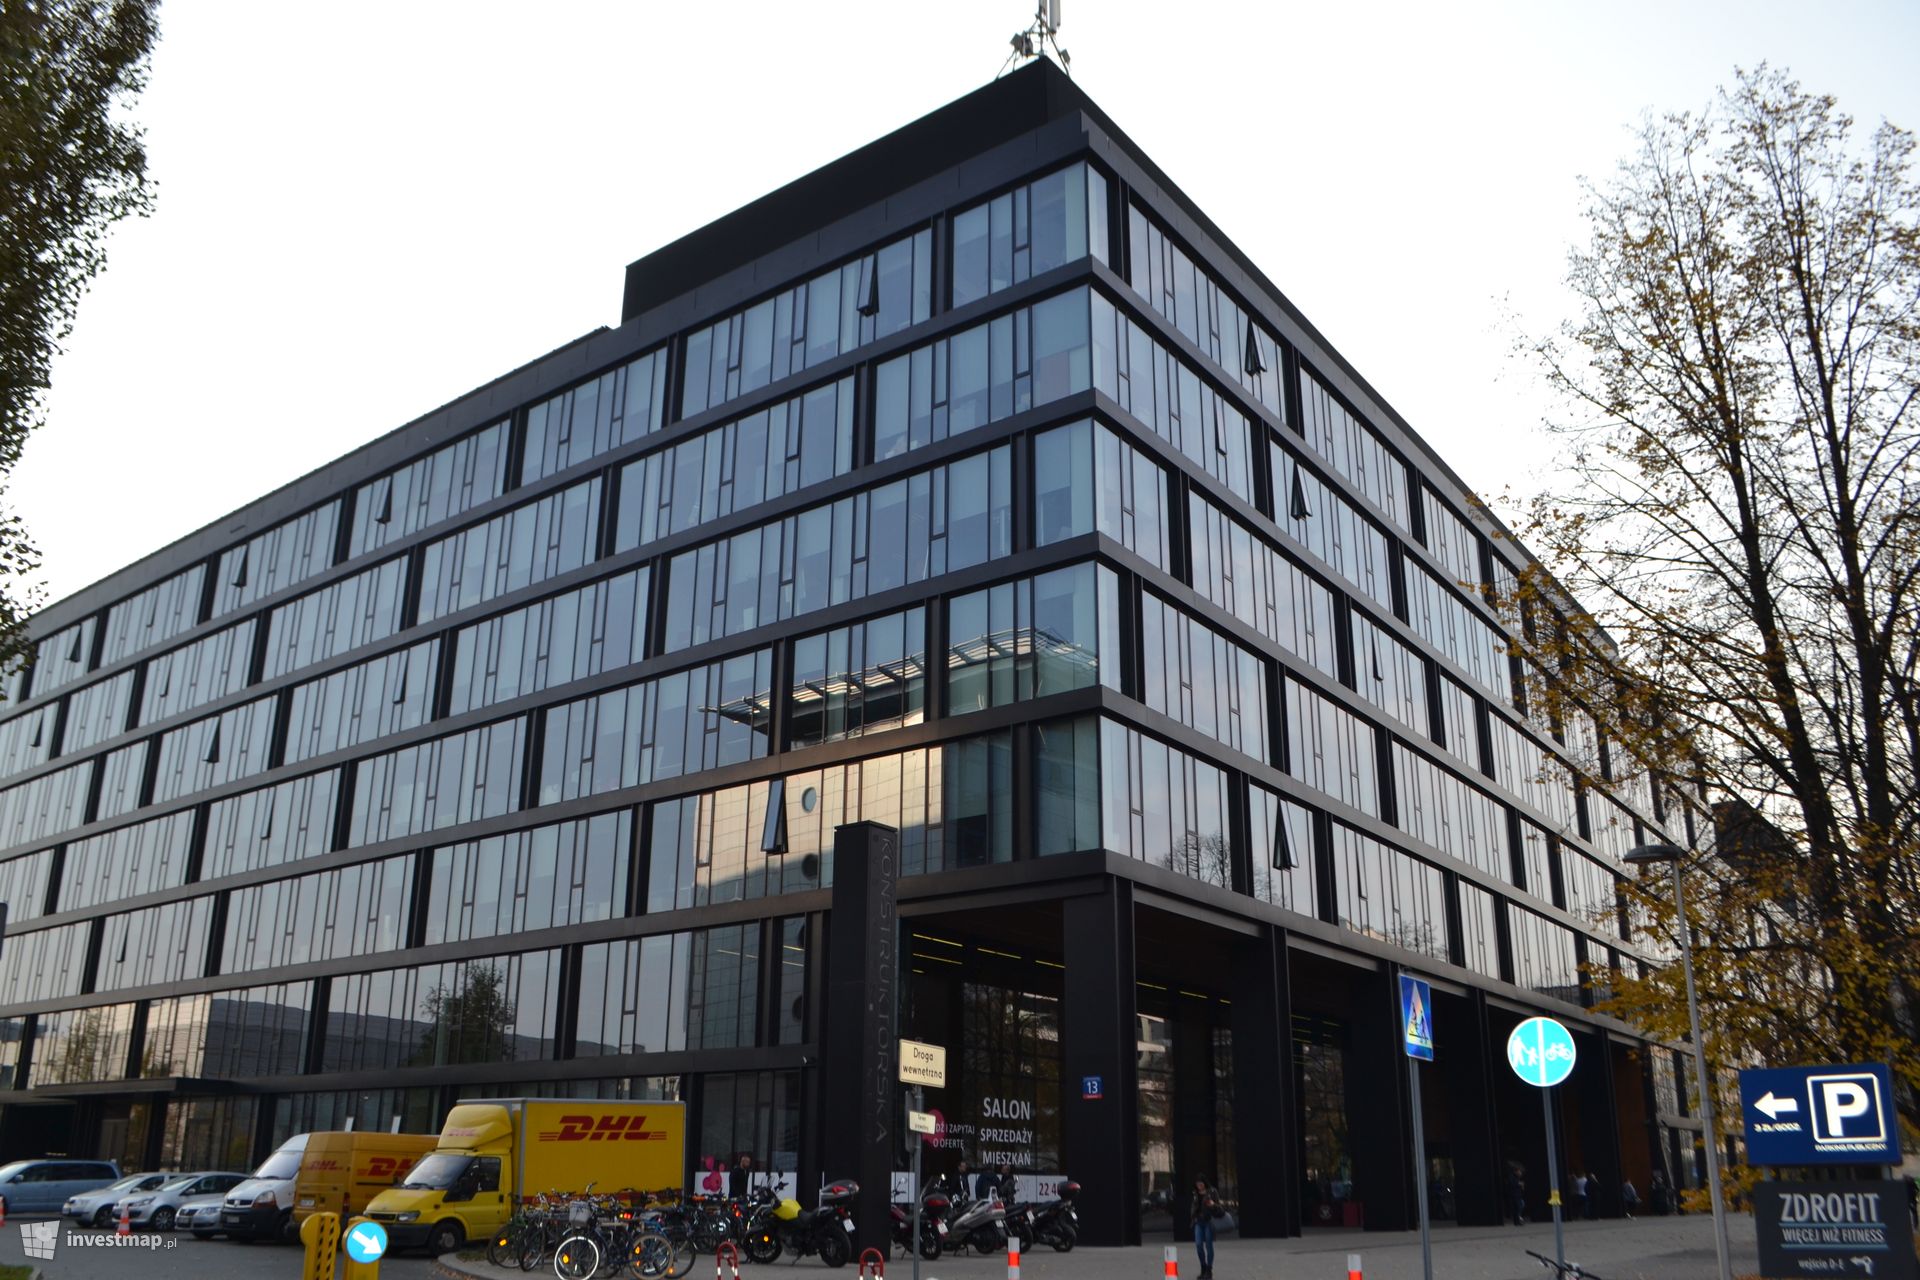 Amerykańska firma Emerson Process Management powiększa swoje biuro w Warszawie